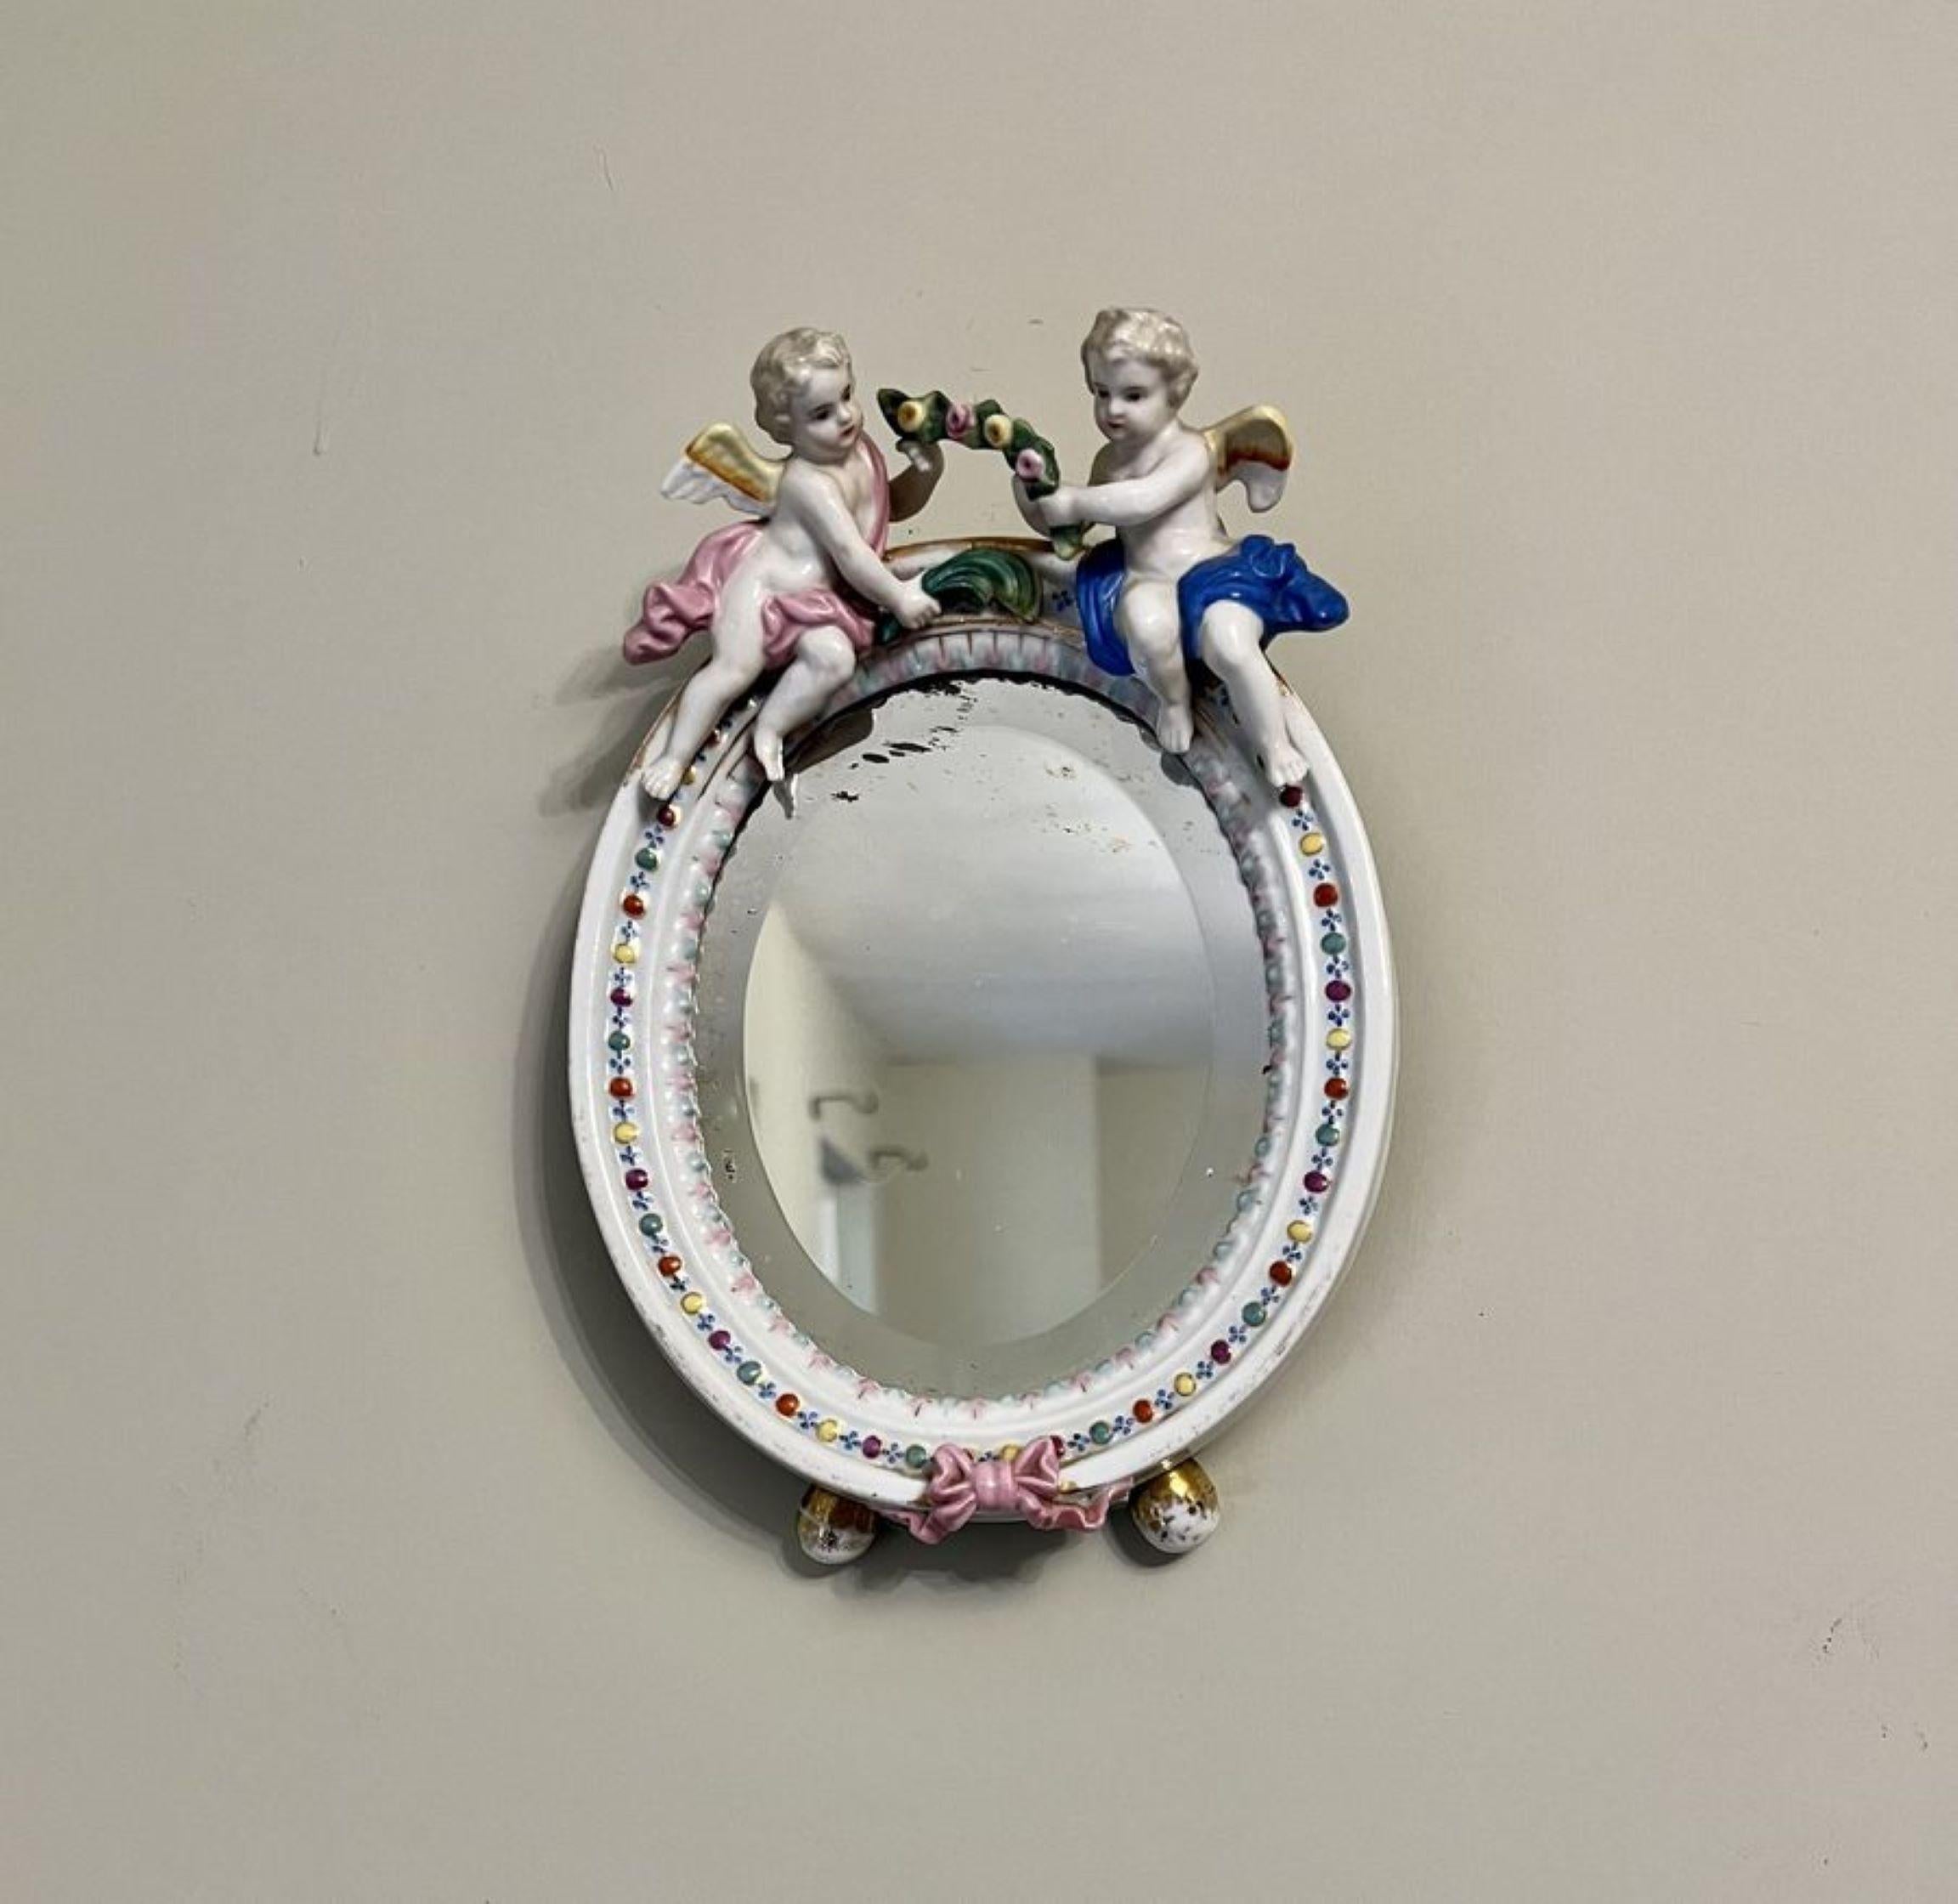 Miroir ovale ancien en porcelaine continentale de qualité victorienne ayant un miroir en porcelaine continentale de qualité avec deux chérubins en haut et un ruban rose en bas dans de magnifiques couleurs bleu, rose, jaune, vert, orange, blanc et or